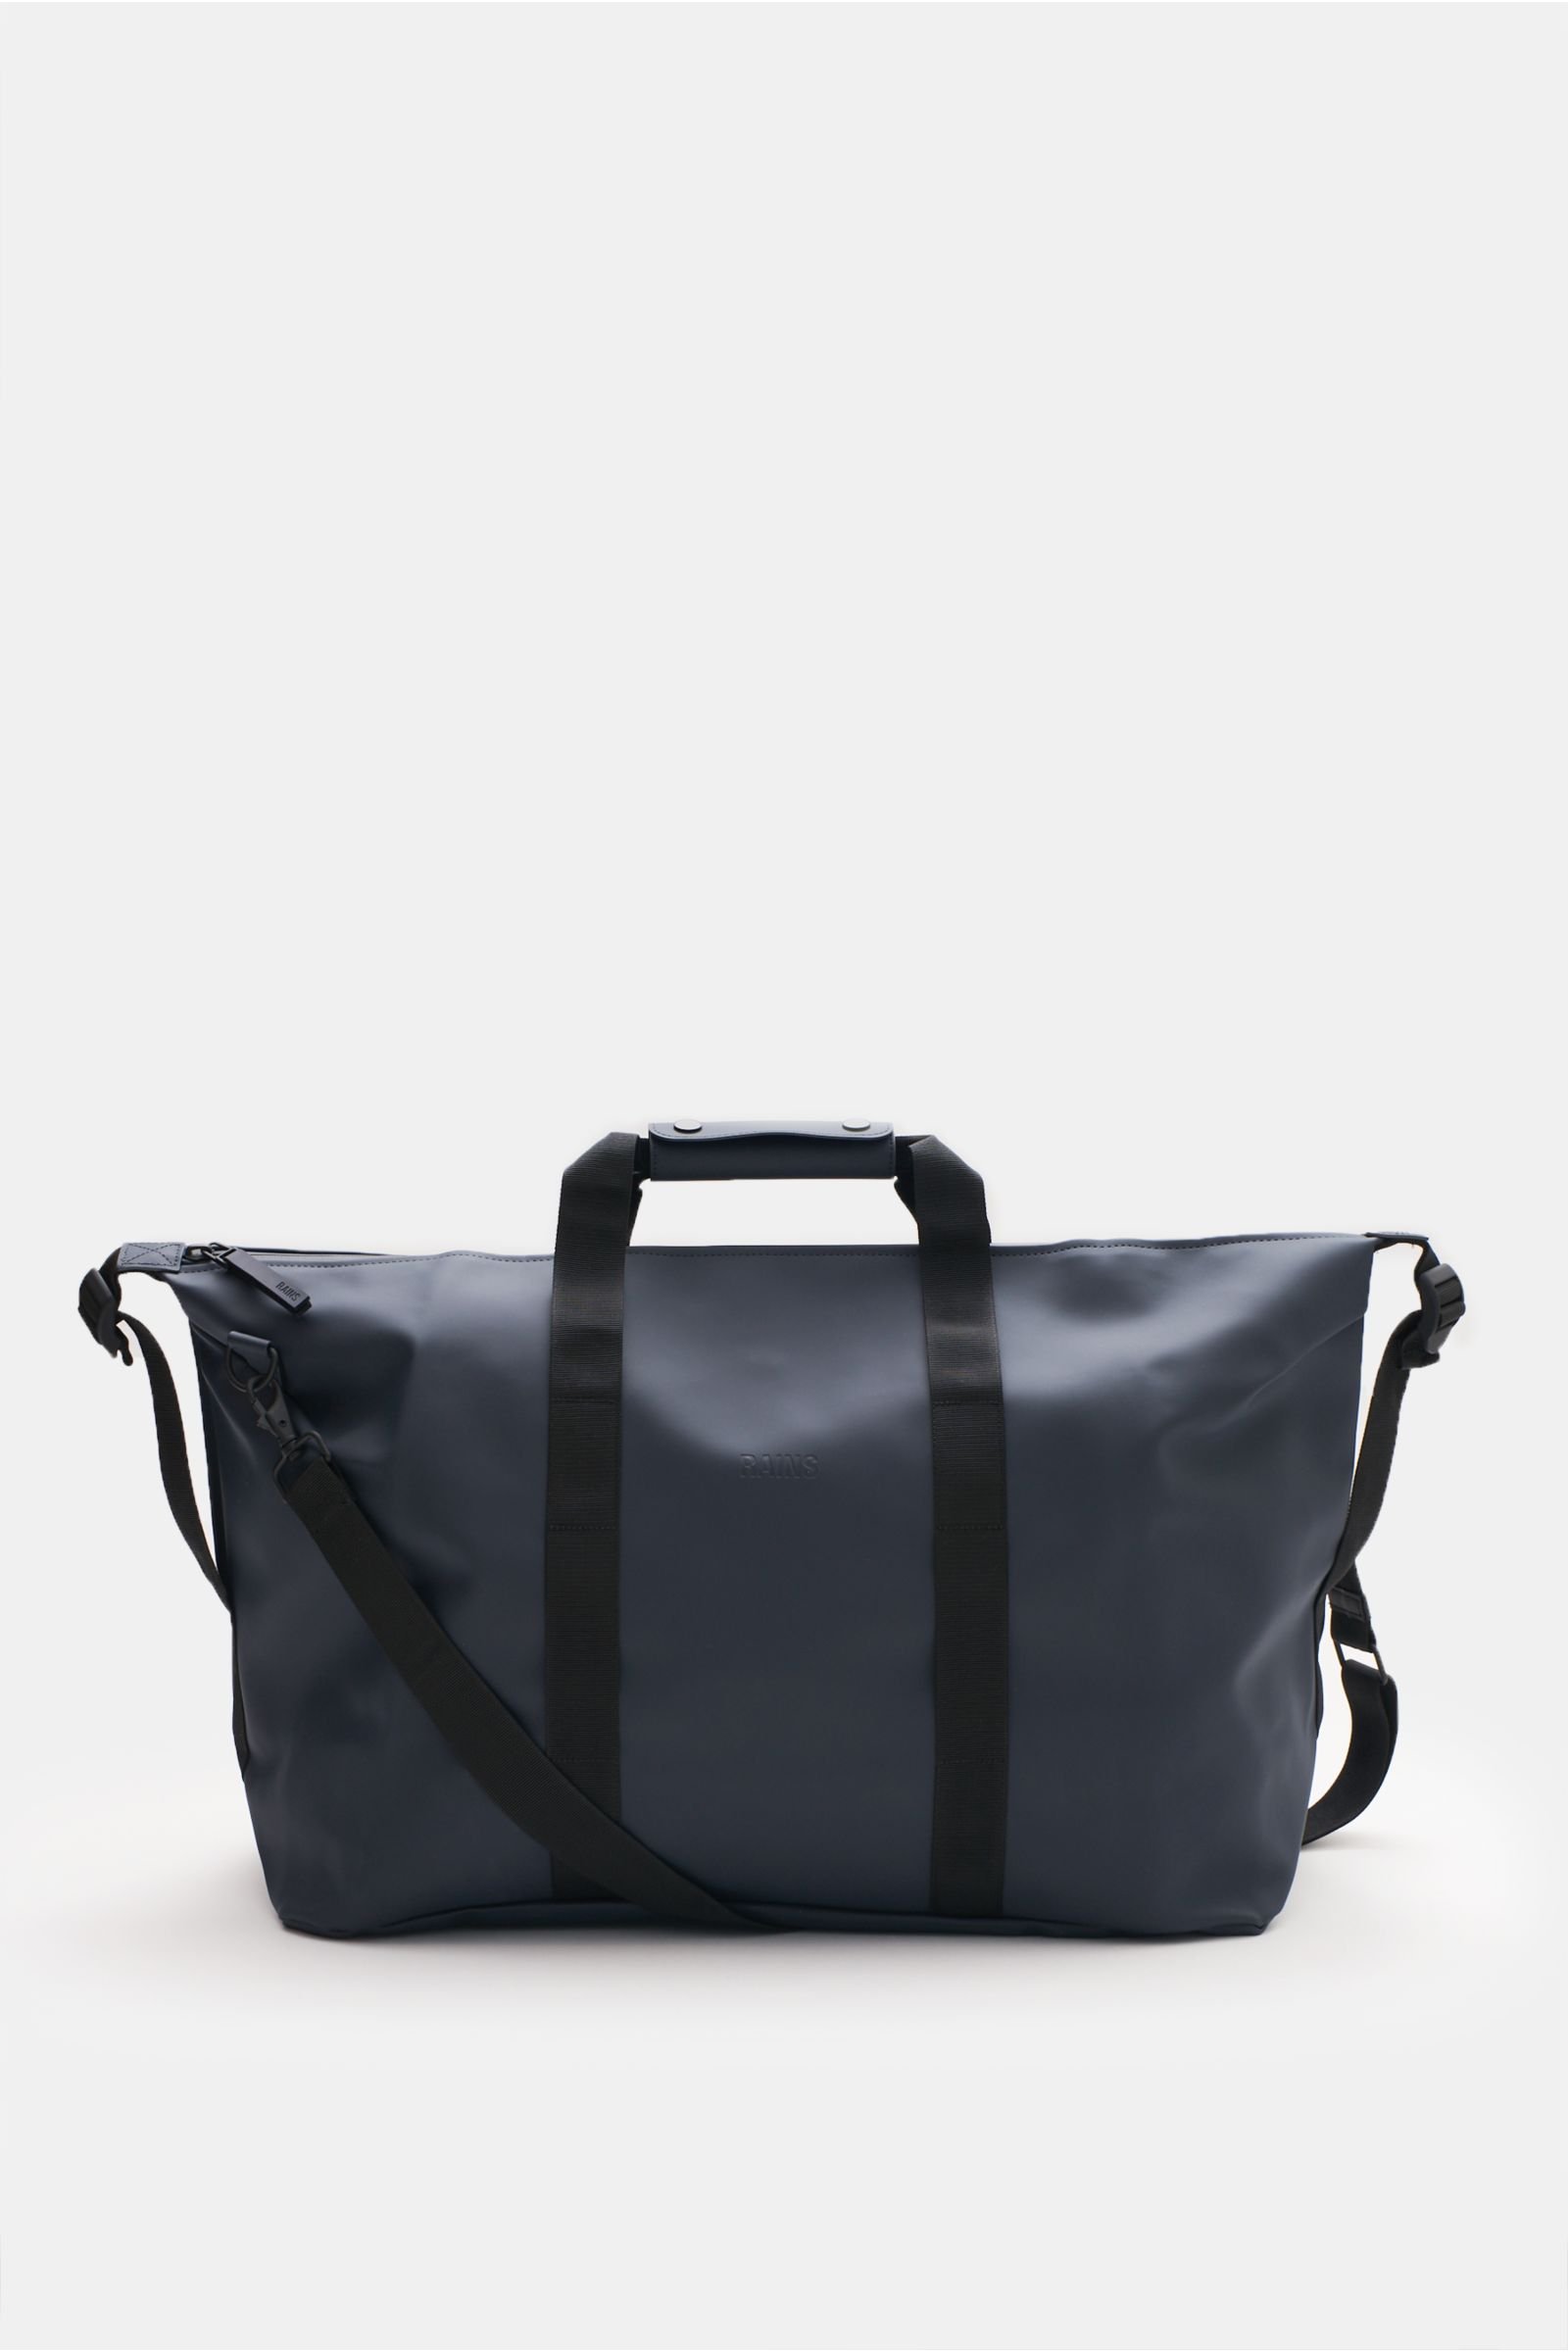 Travel bag 'Weekend Bag' navy